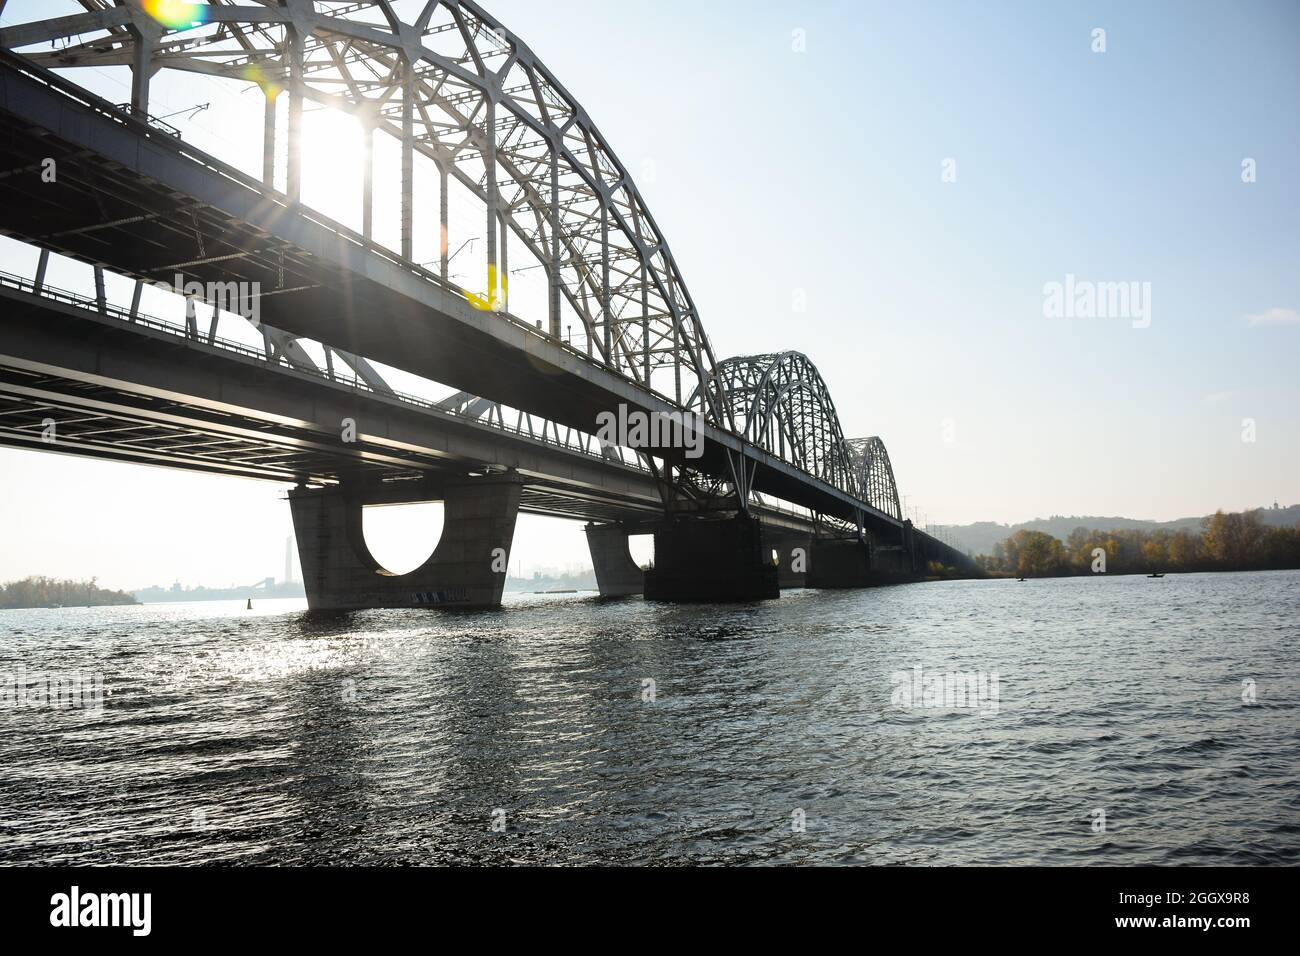 Lange gewölbte Eisenbrücke über einen breiten Fluss. Sonnenstrahlen durchdringen sie. Vor dem Hintergrund des blauen Himmels. Stockfoto